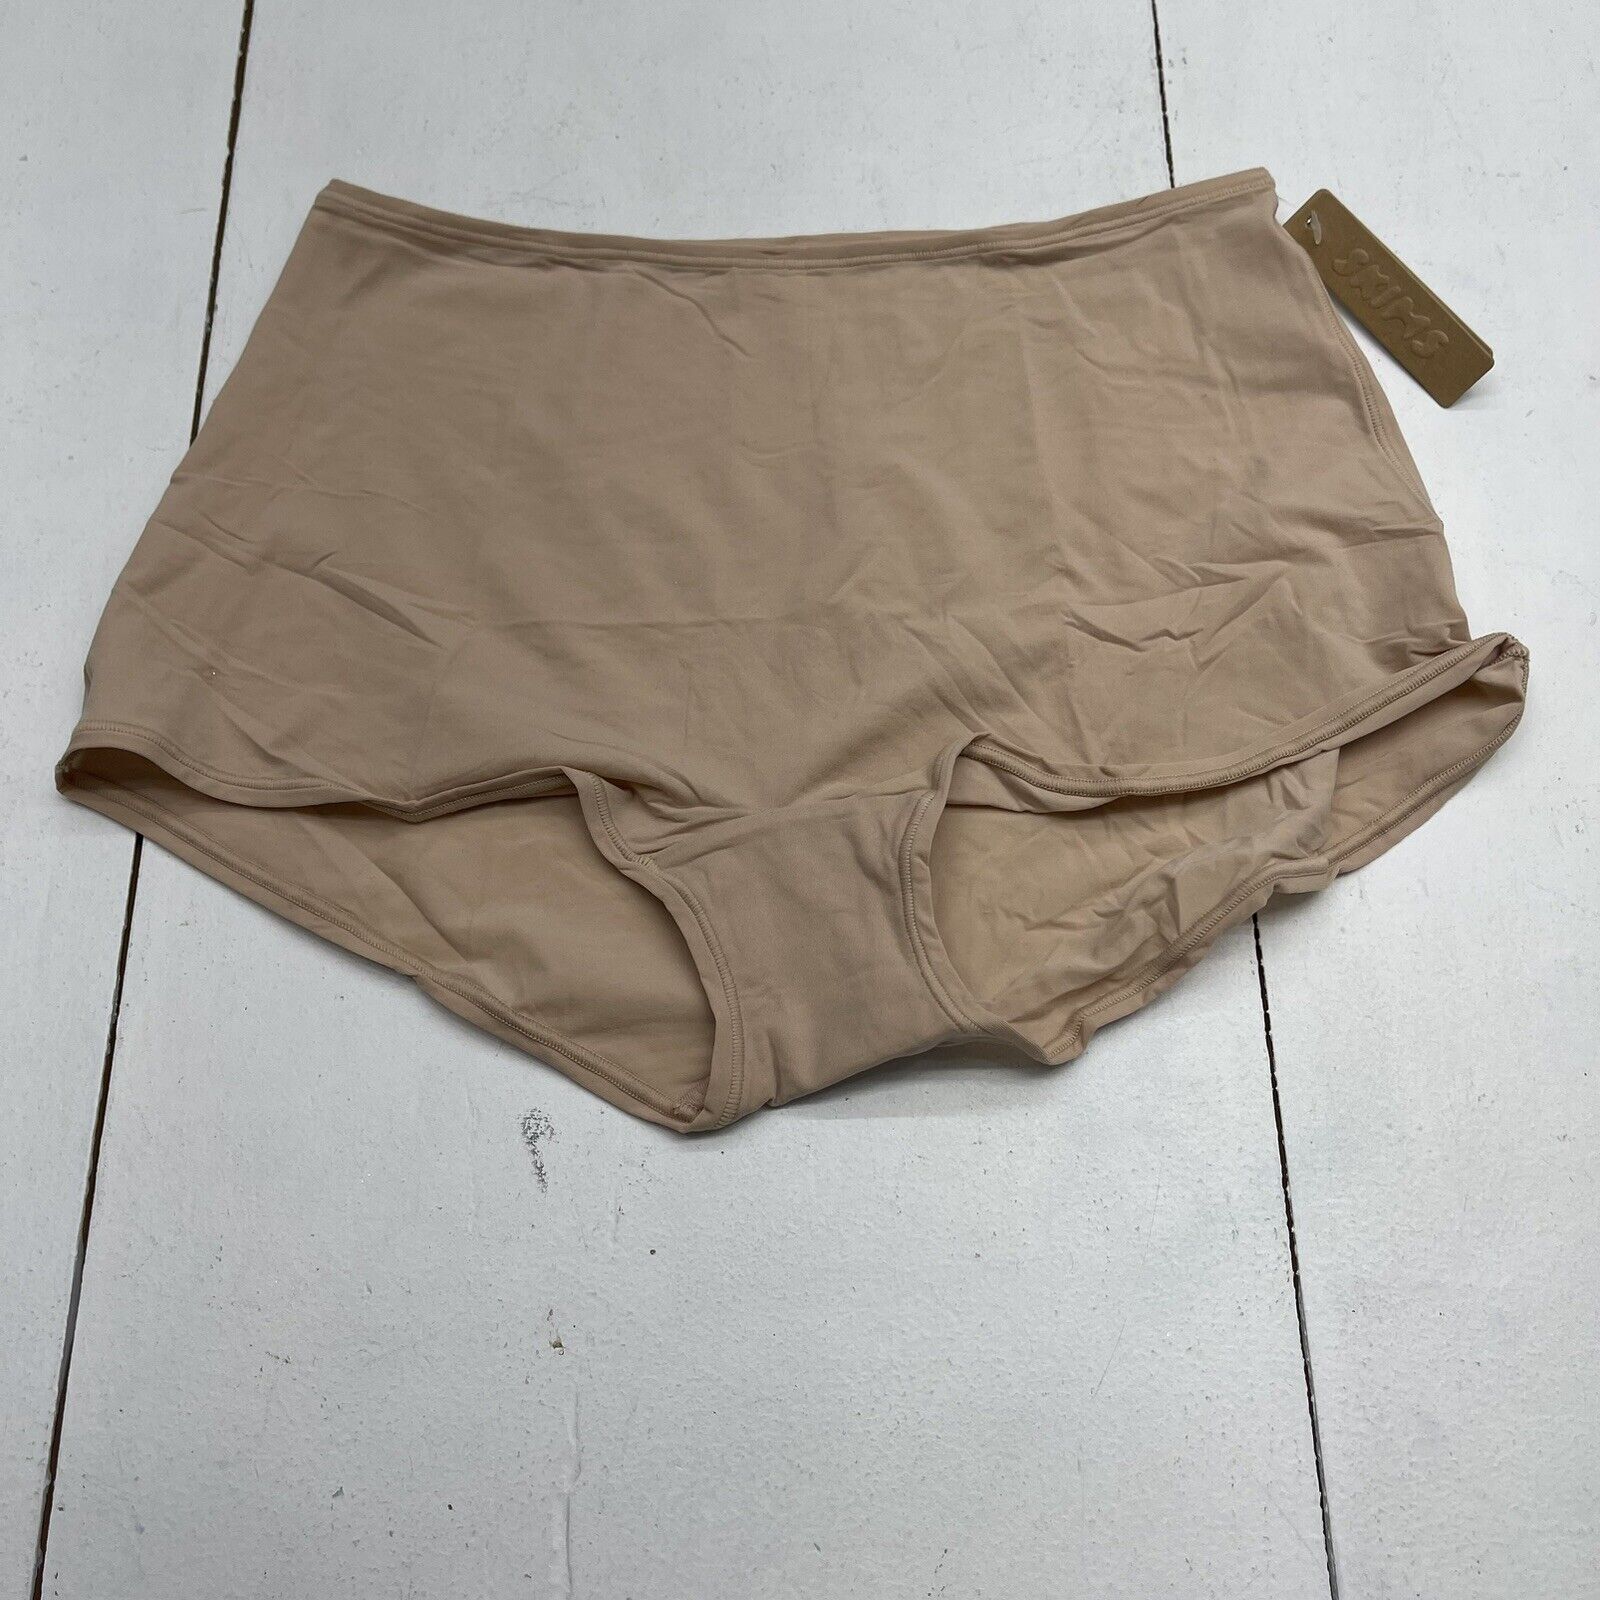 Skims Fits Everybody Full Brief Underwear Mica Beige Women’s 2X New Defect